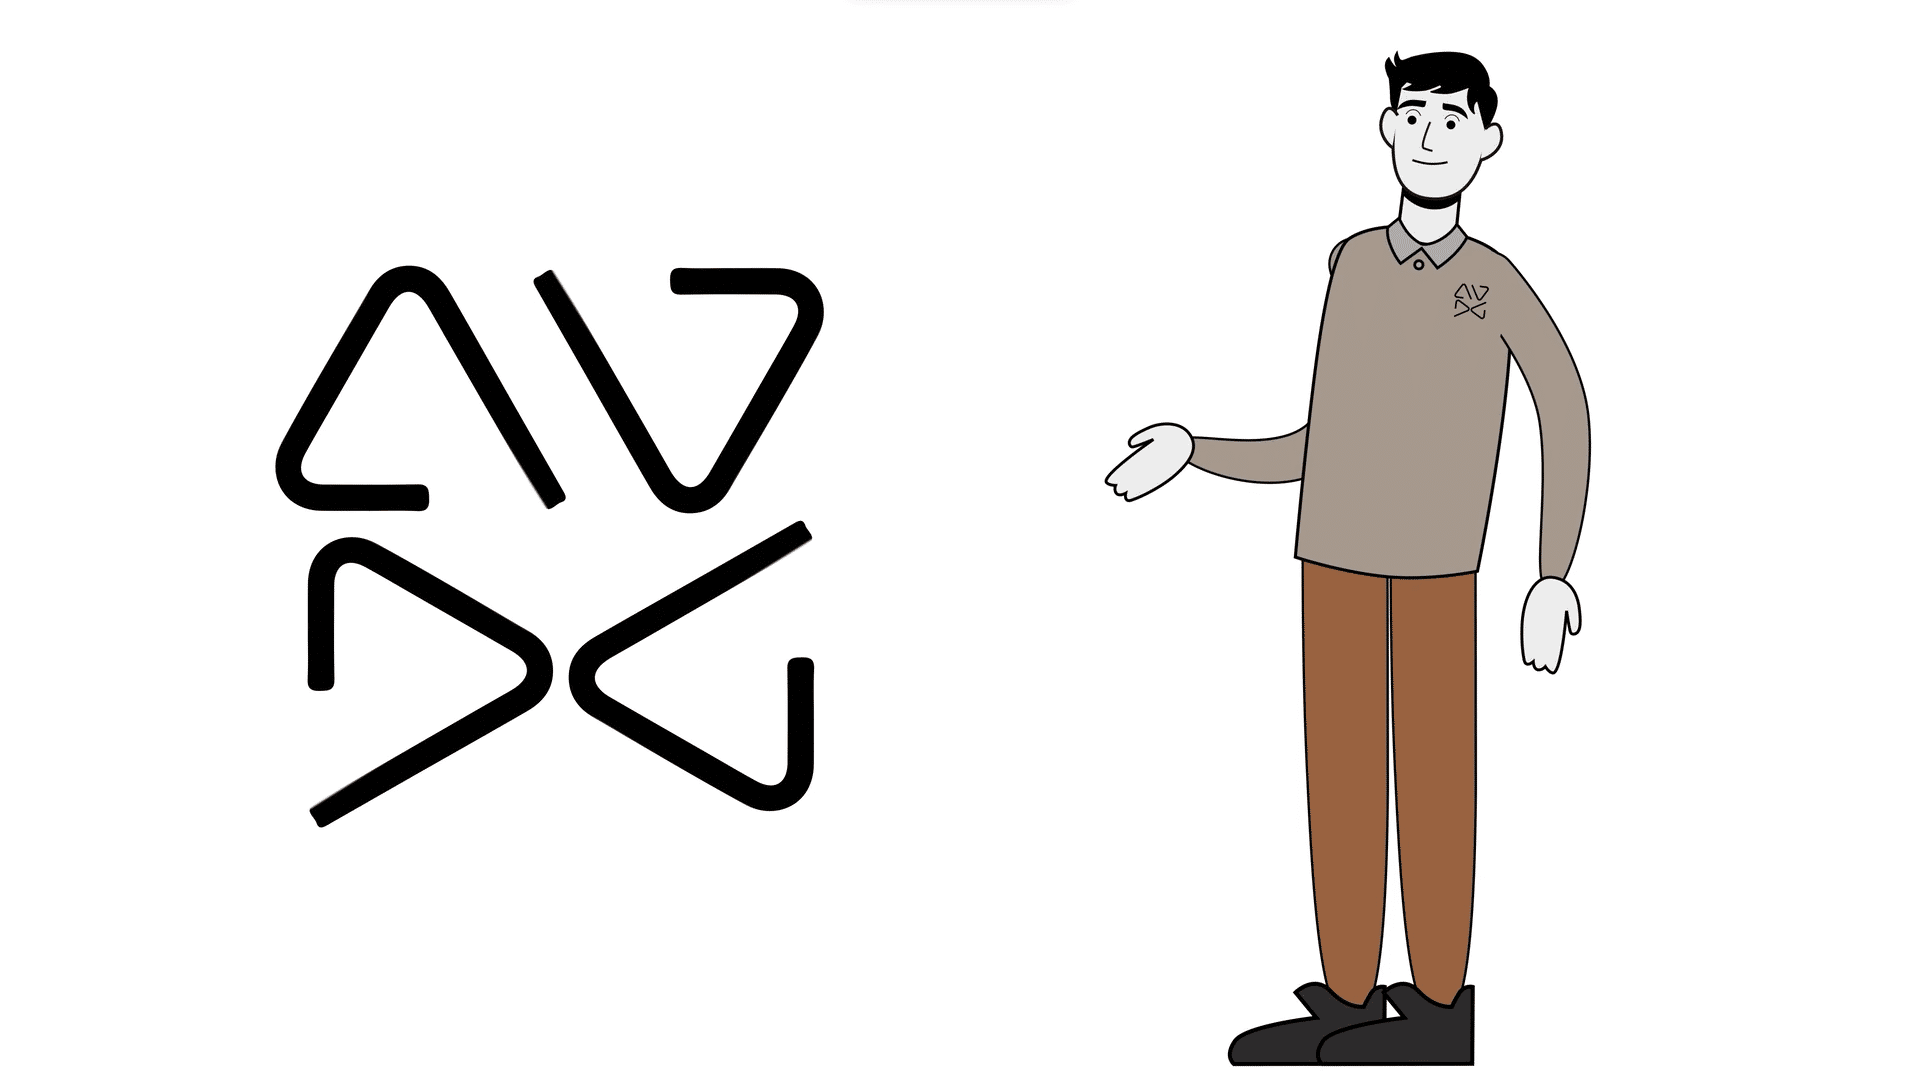 AVDG logo with animated man